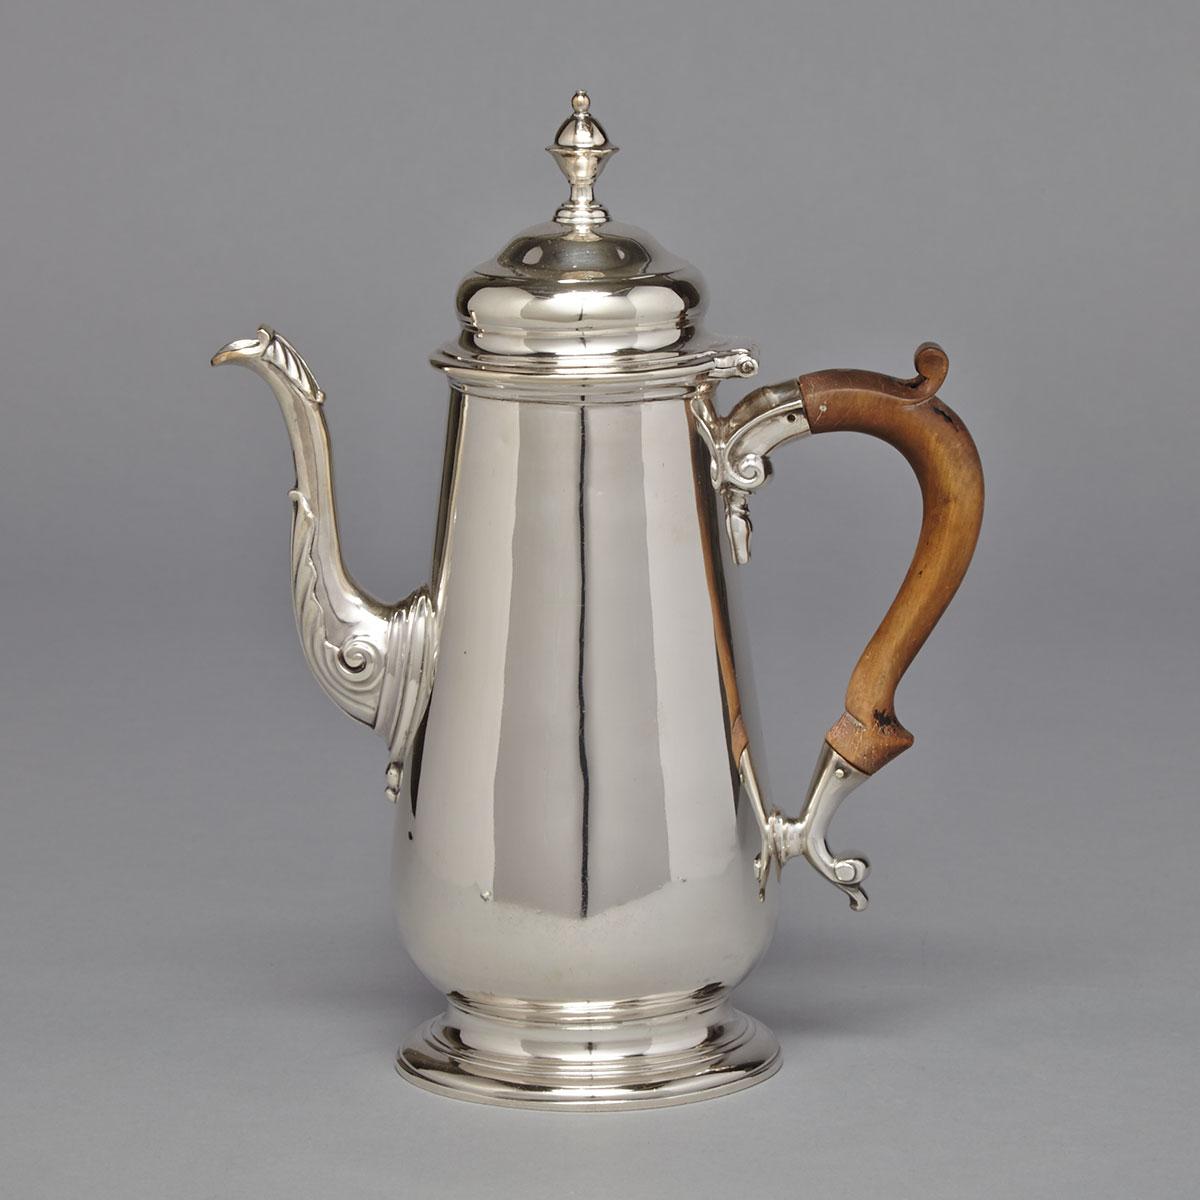 George II Silver Coffee Pot, London, 1749